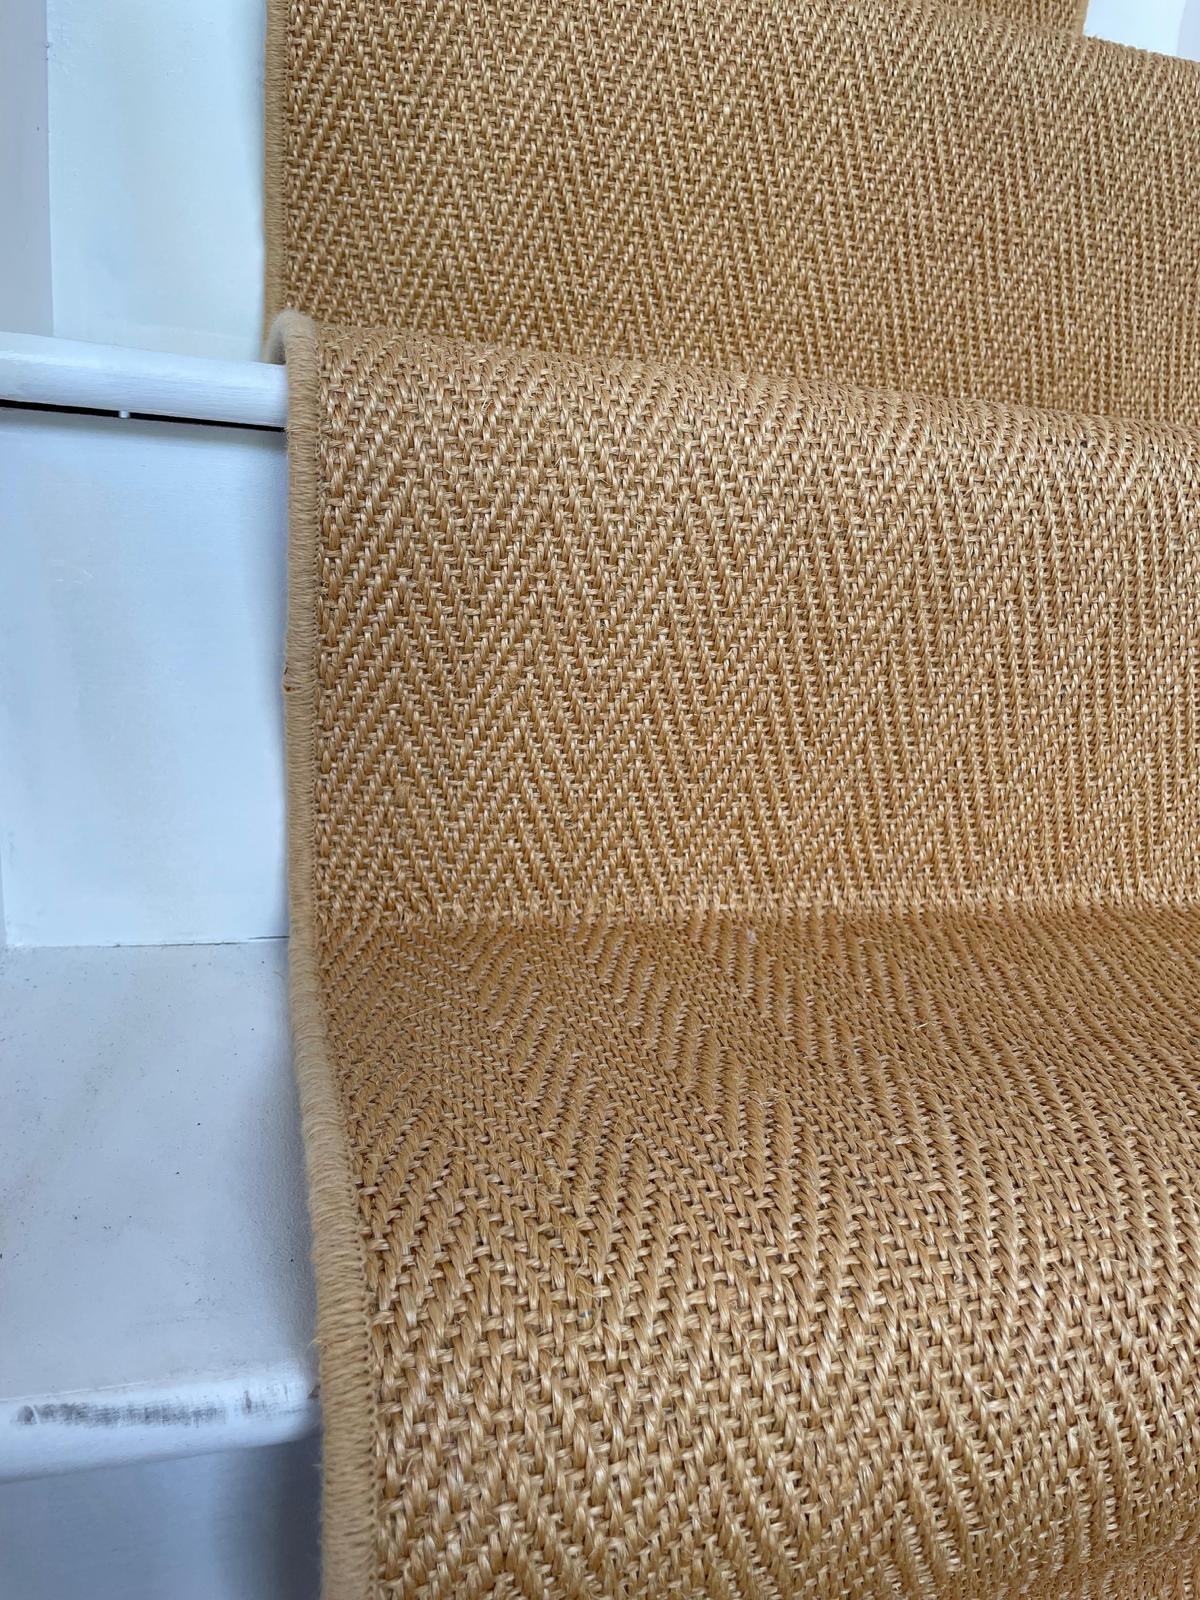 Golden sisal herringbone carpet stair runner from Alternative Flooring Hampton range